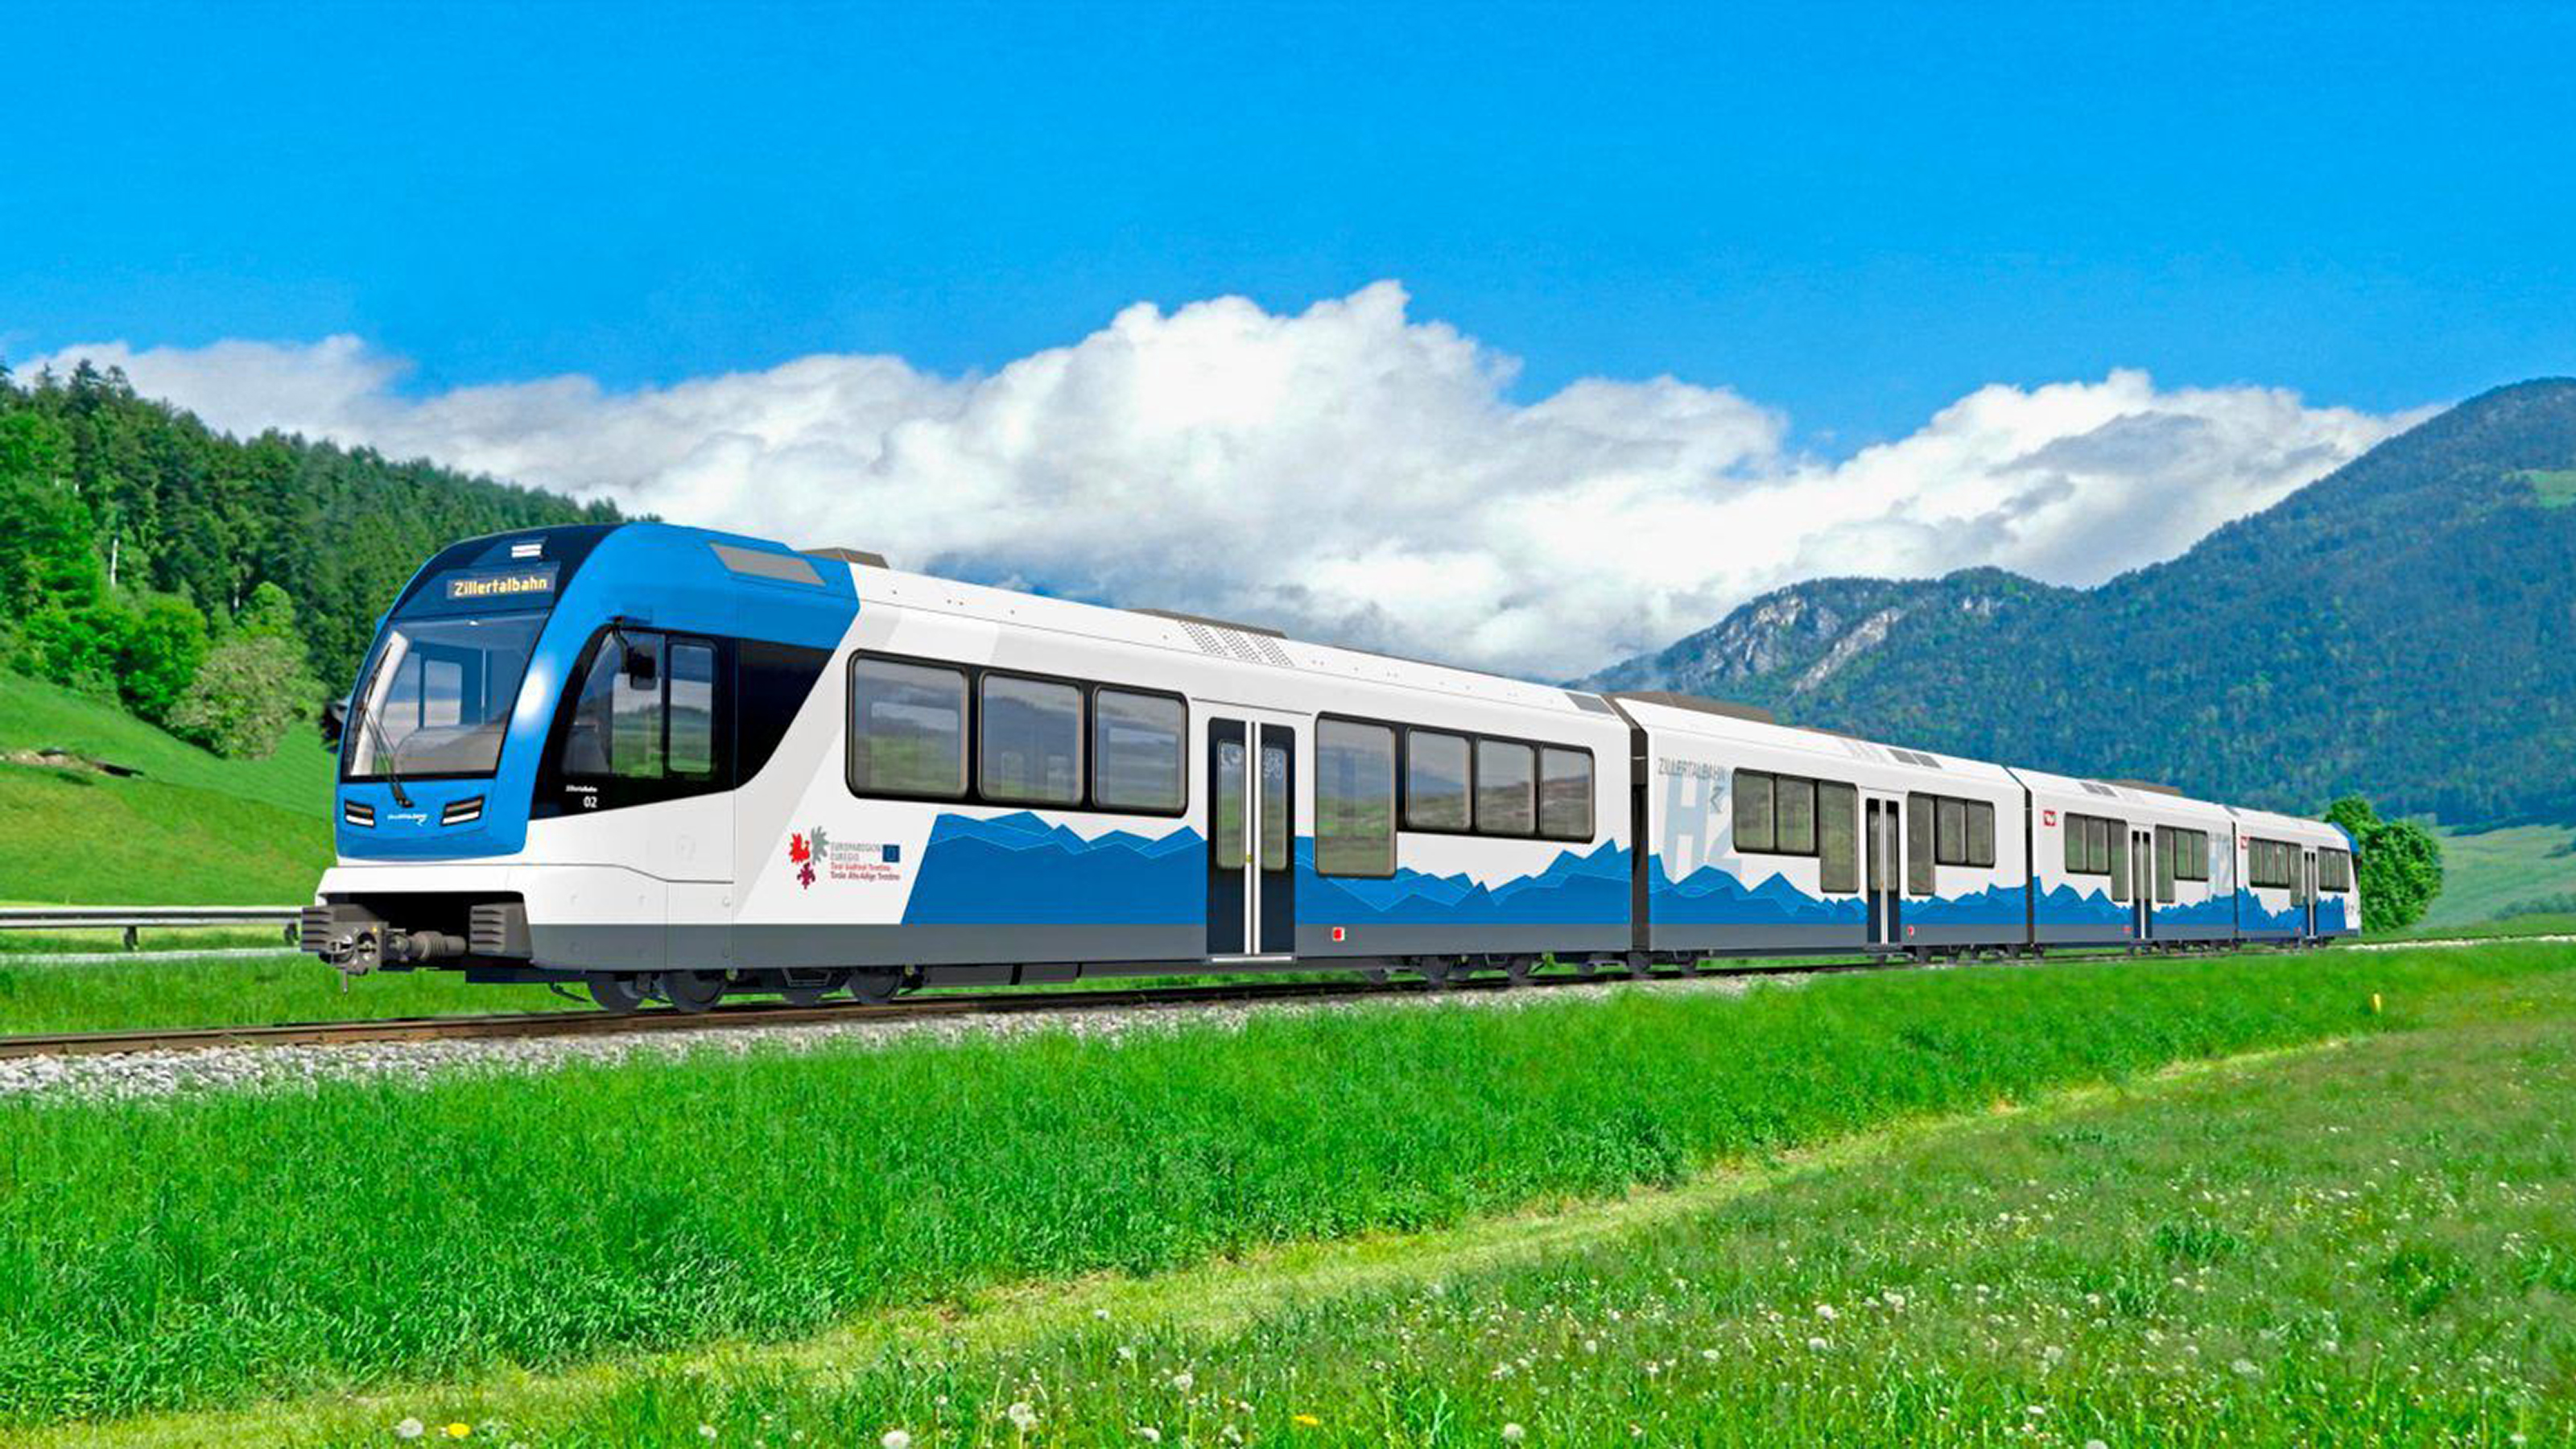 Fahrender Zug mit der Aufschrift "Zillertalbahn" und grüne Wiese